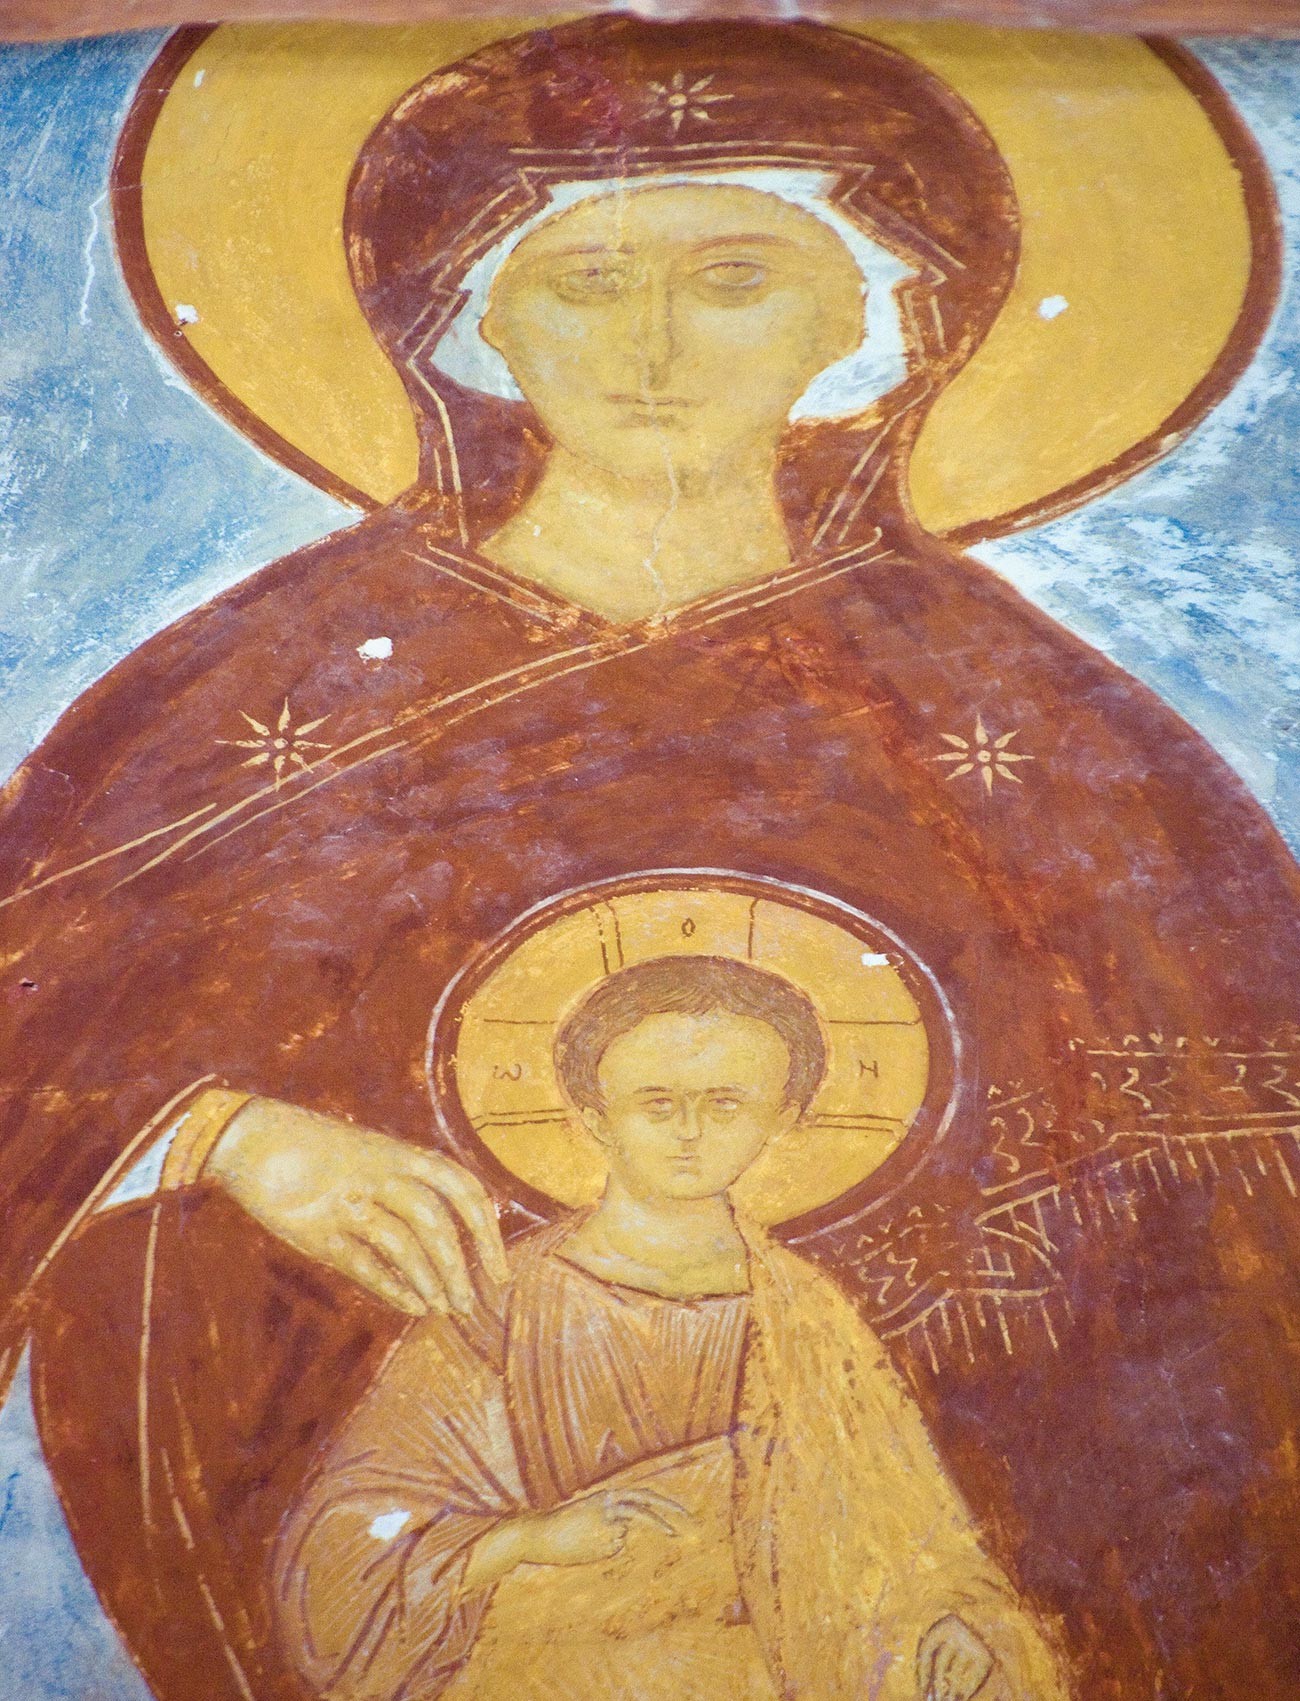 Cathédrale de la Nativité. Abside centrale. Fresque de Marie intronisée avec l'Enfant Jésus. Au premier plan : tirant en fer stabilisant les murs